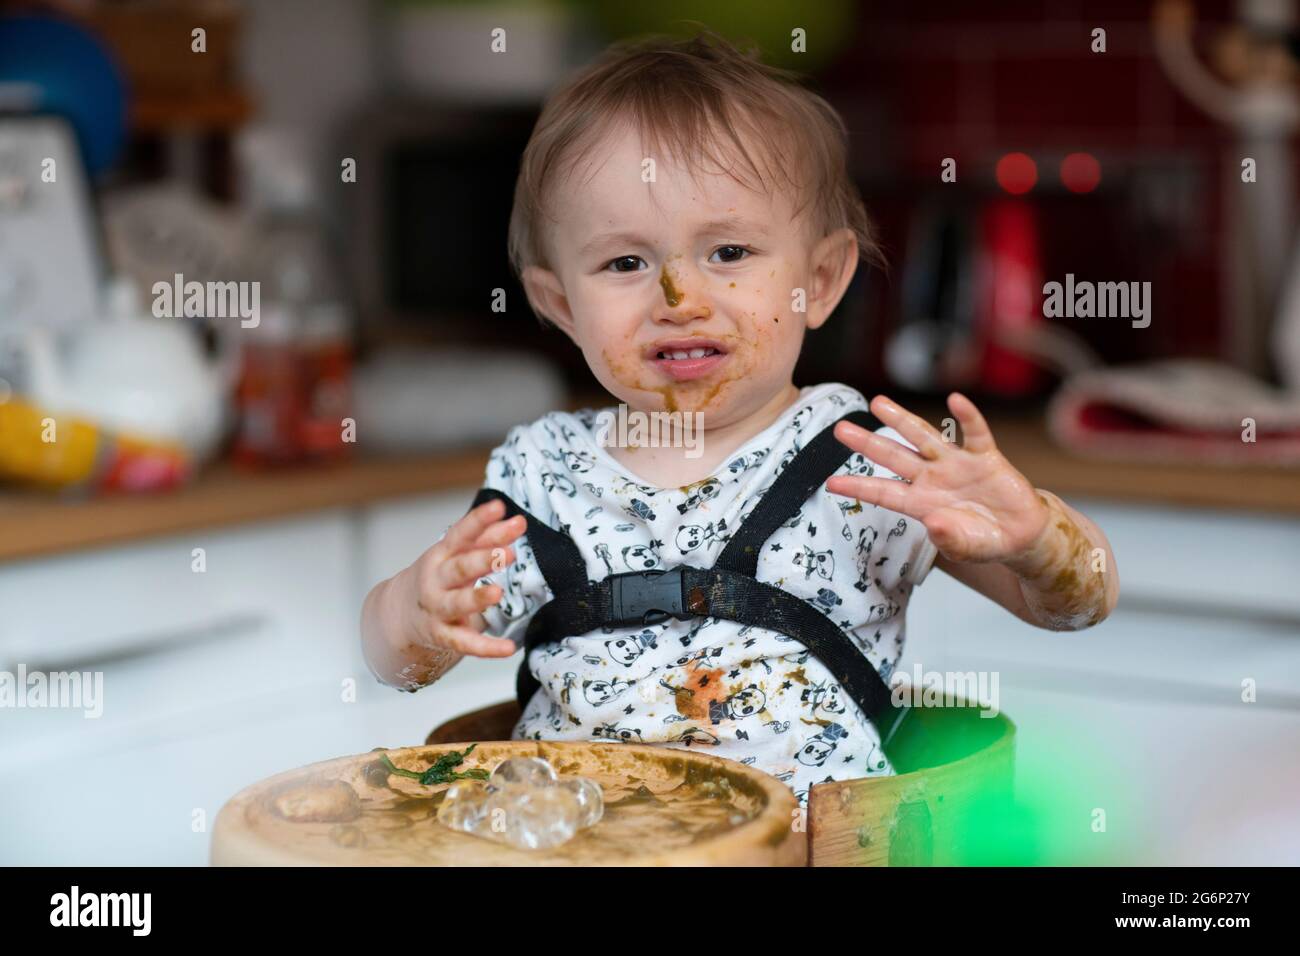 Un bébé mangeant du désordre dans une chaise haute Banque D'Images